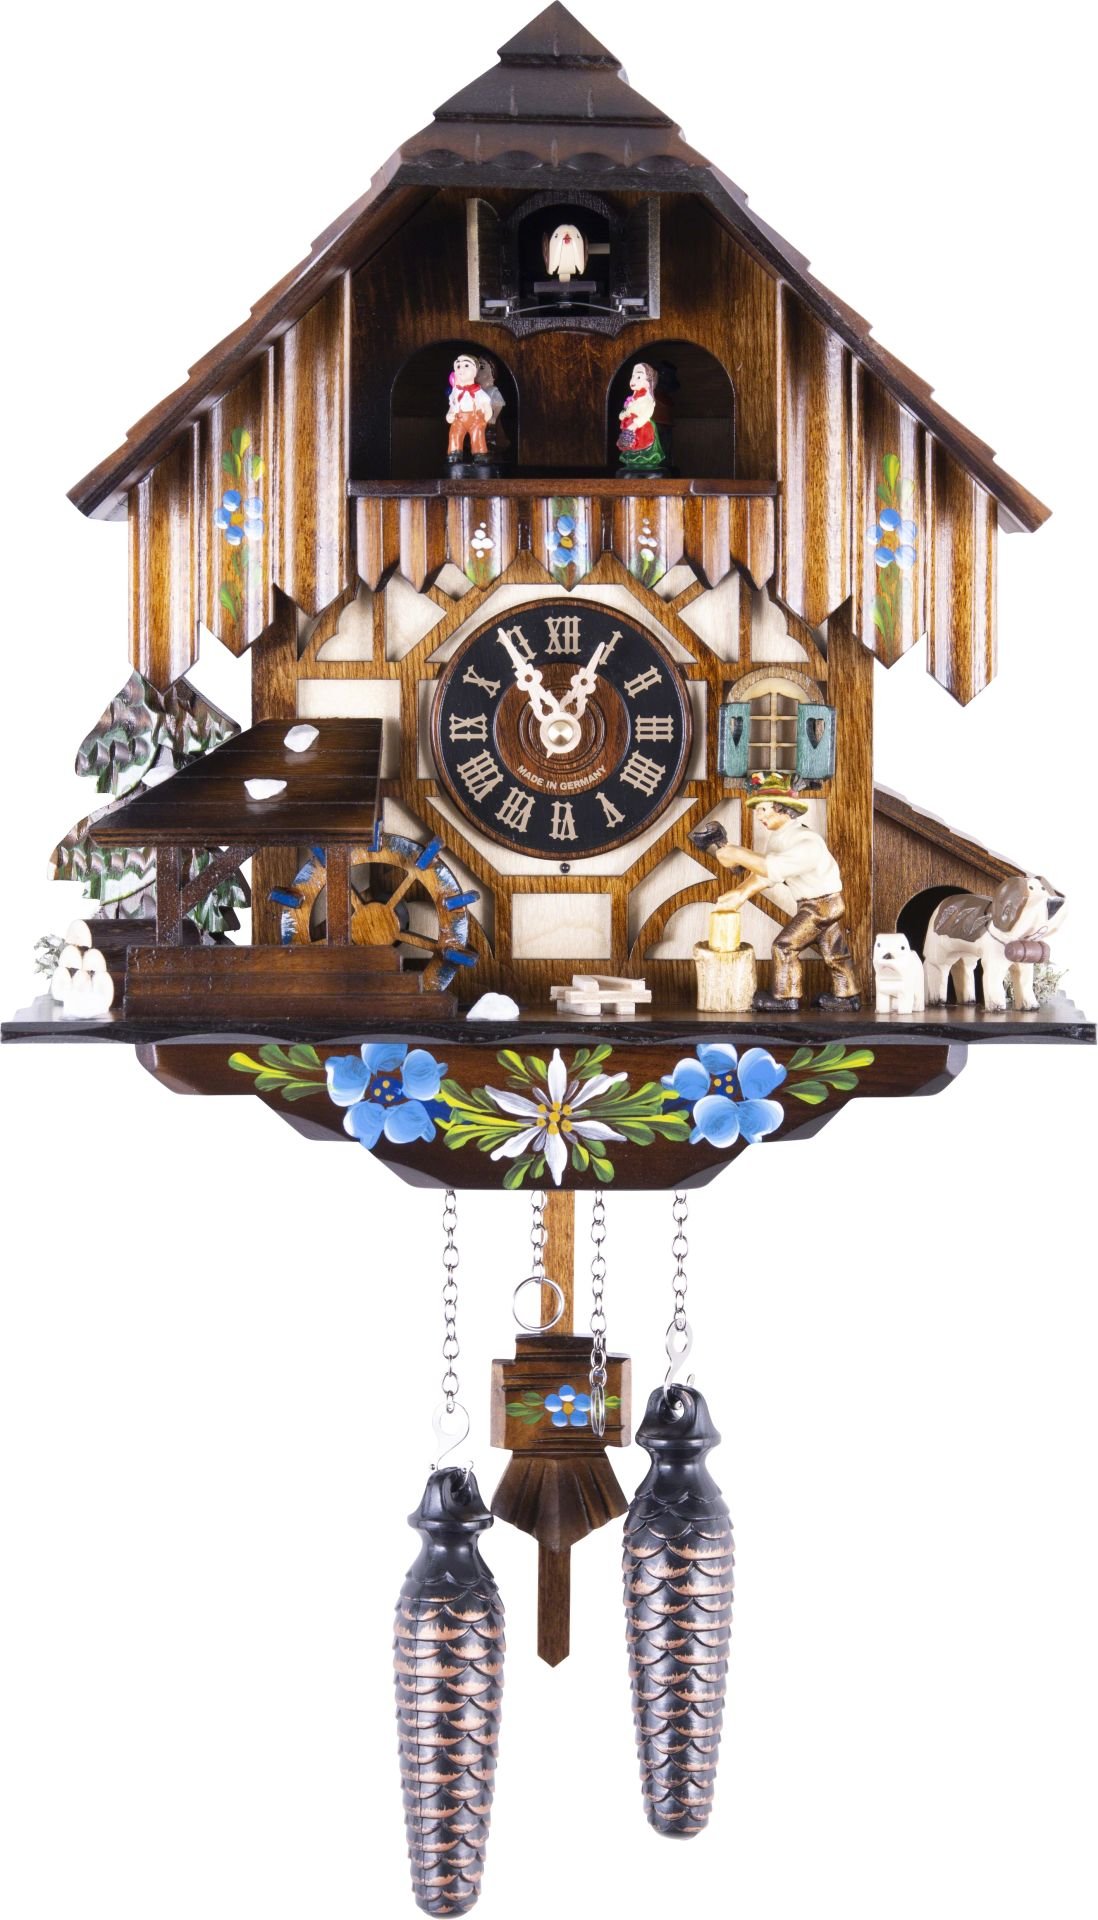 Kuckucksuhr Chalet-Stil Quarz-Uhrwerk 33cm von Engstler